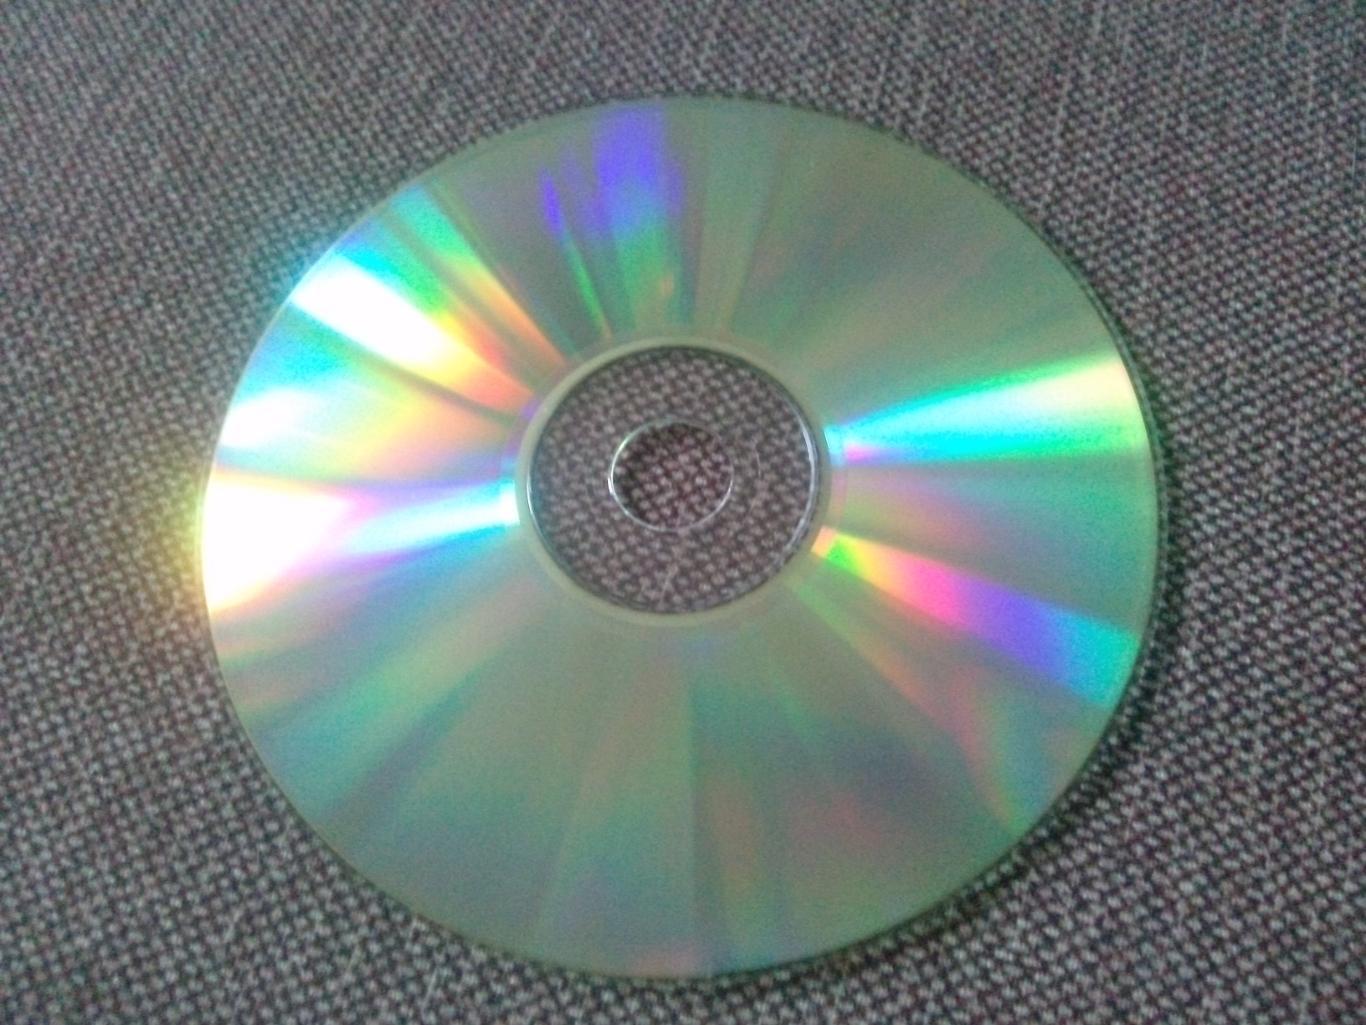 MP - 3 CD диск : группаАукцыон1986 - 2000 гг. 11 альбомов (Русский рок) 3